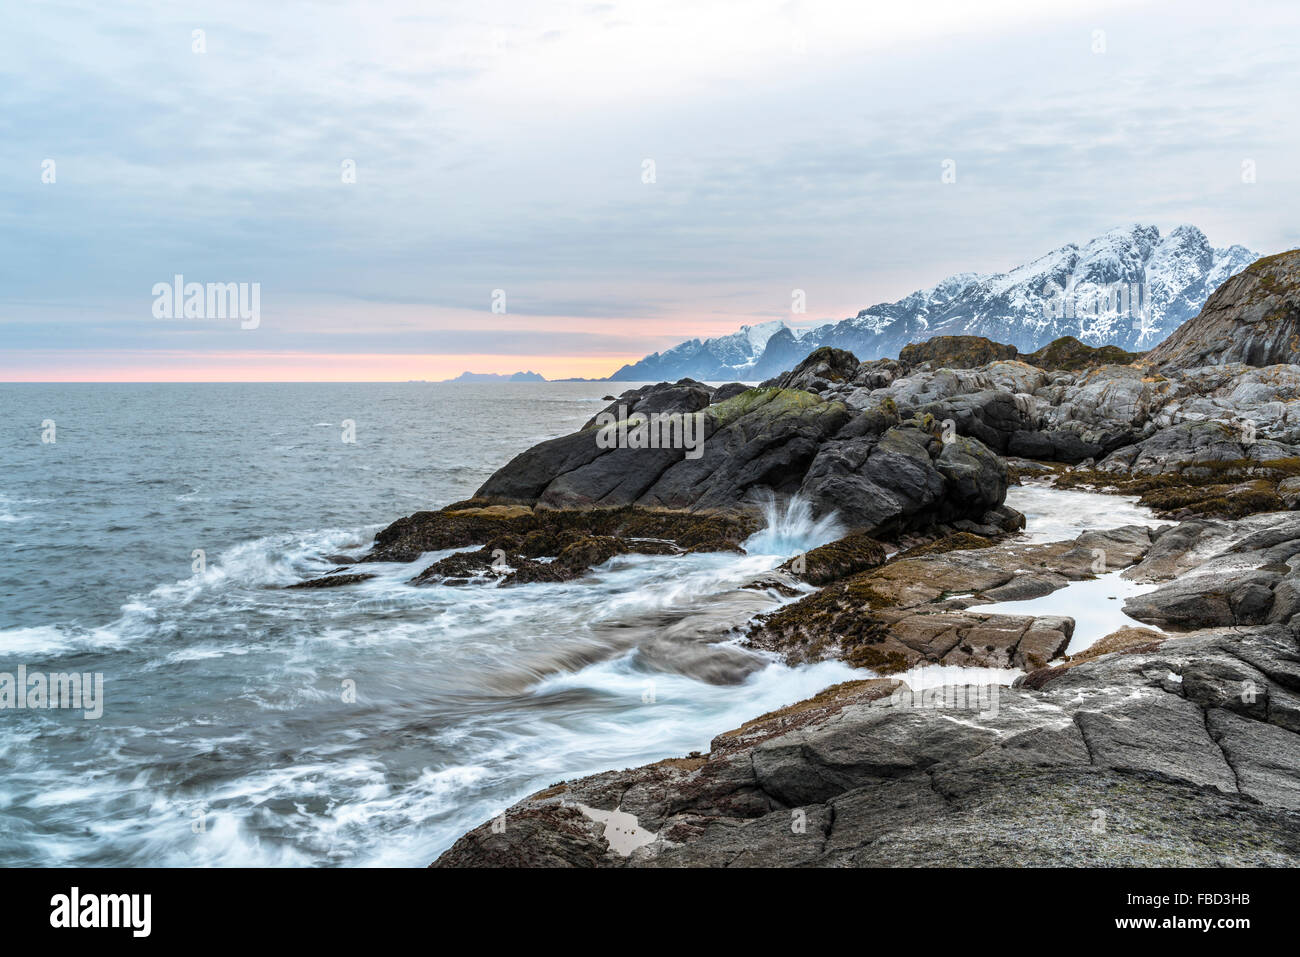 Coast of Nesland, Flakstadøy, Lofoten, Norway Stock Photo